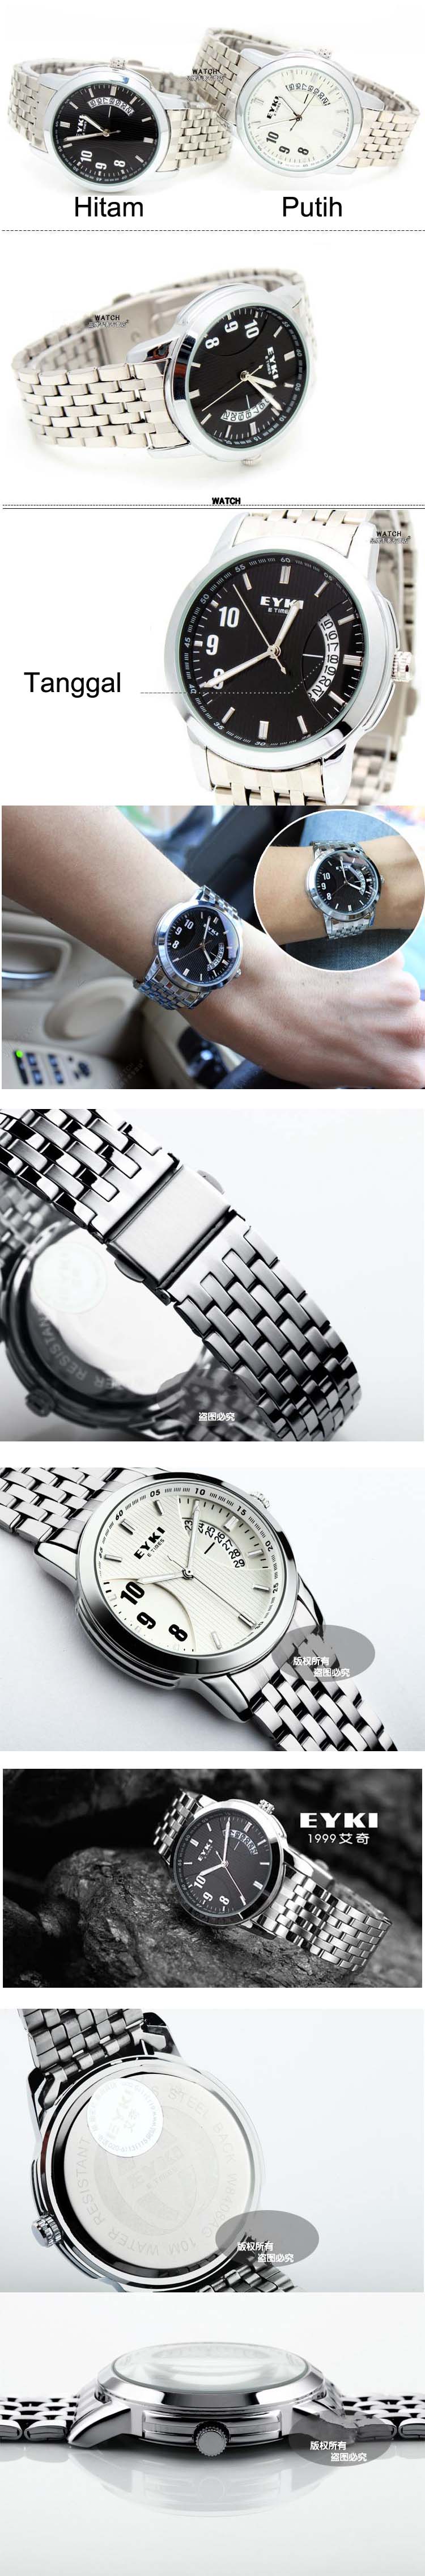 jual jam tangan EYKI untuk pria , model rantai dengan gaya casual< Eyki 1999 merupakan jam tangan casual yang banyak dicari pria